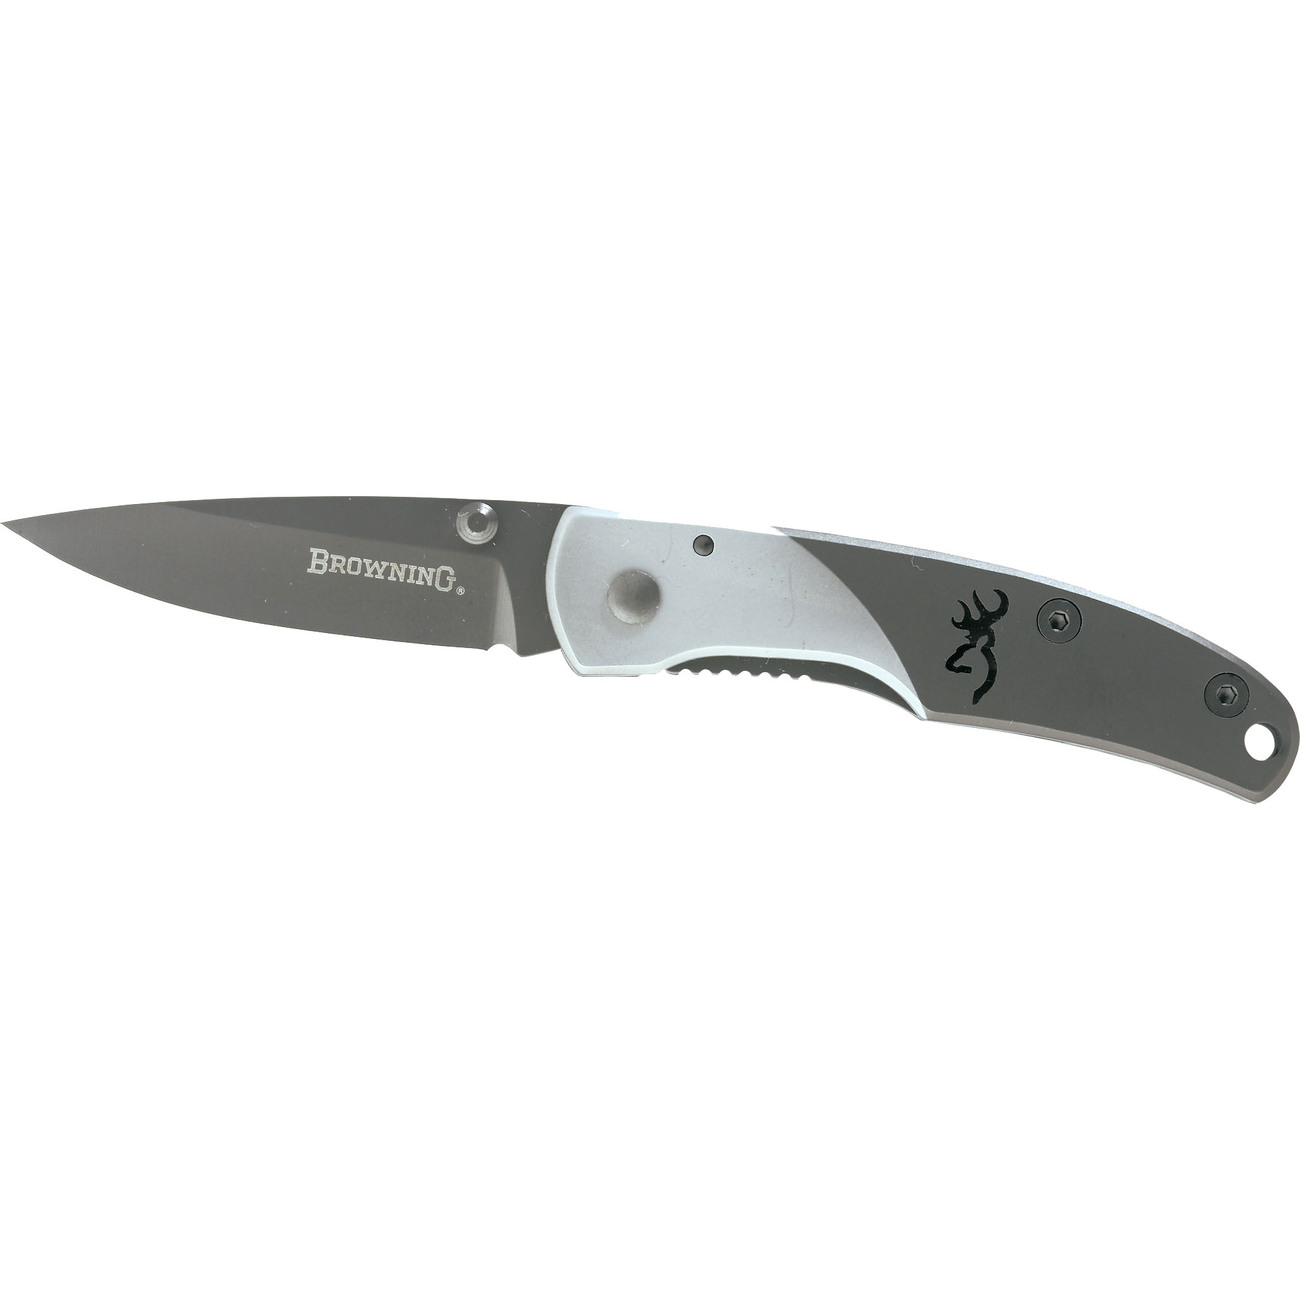 Browning KNIFE, MOUNTAIN TI, SMALL